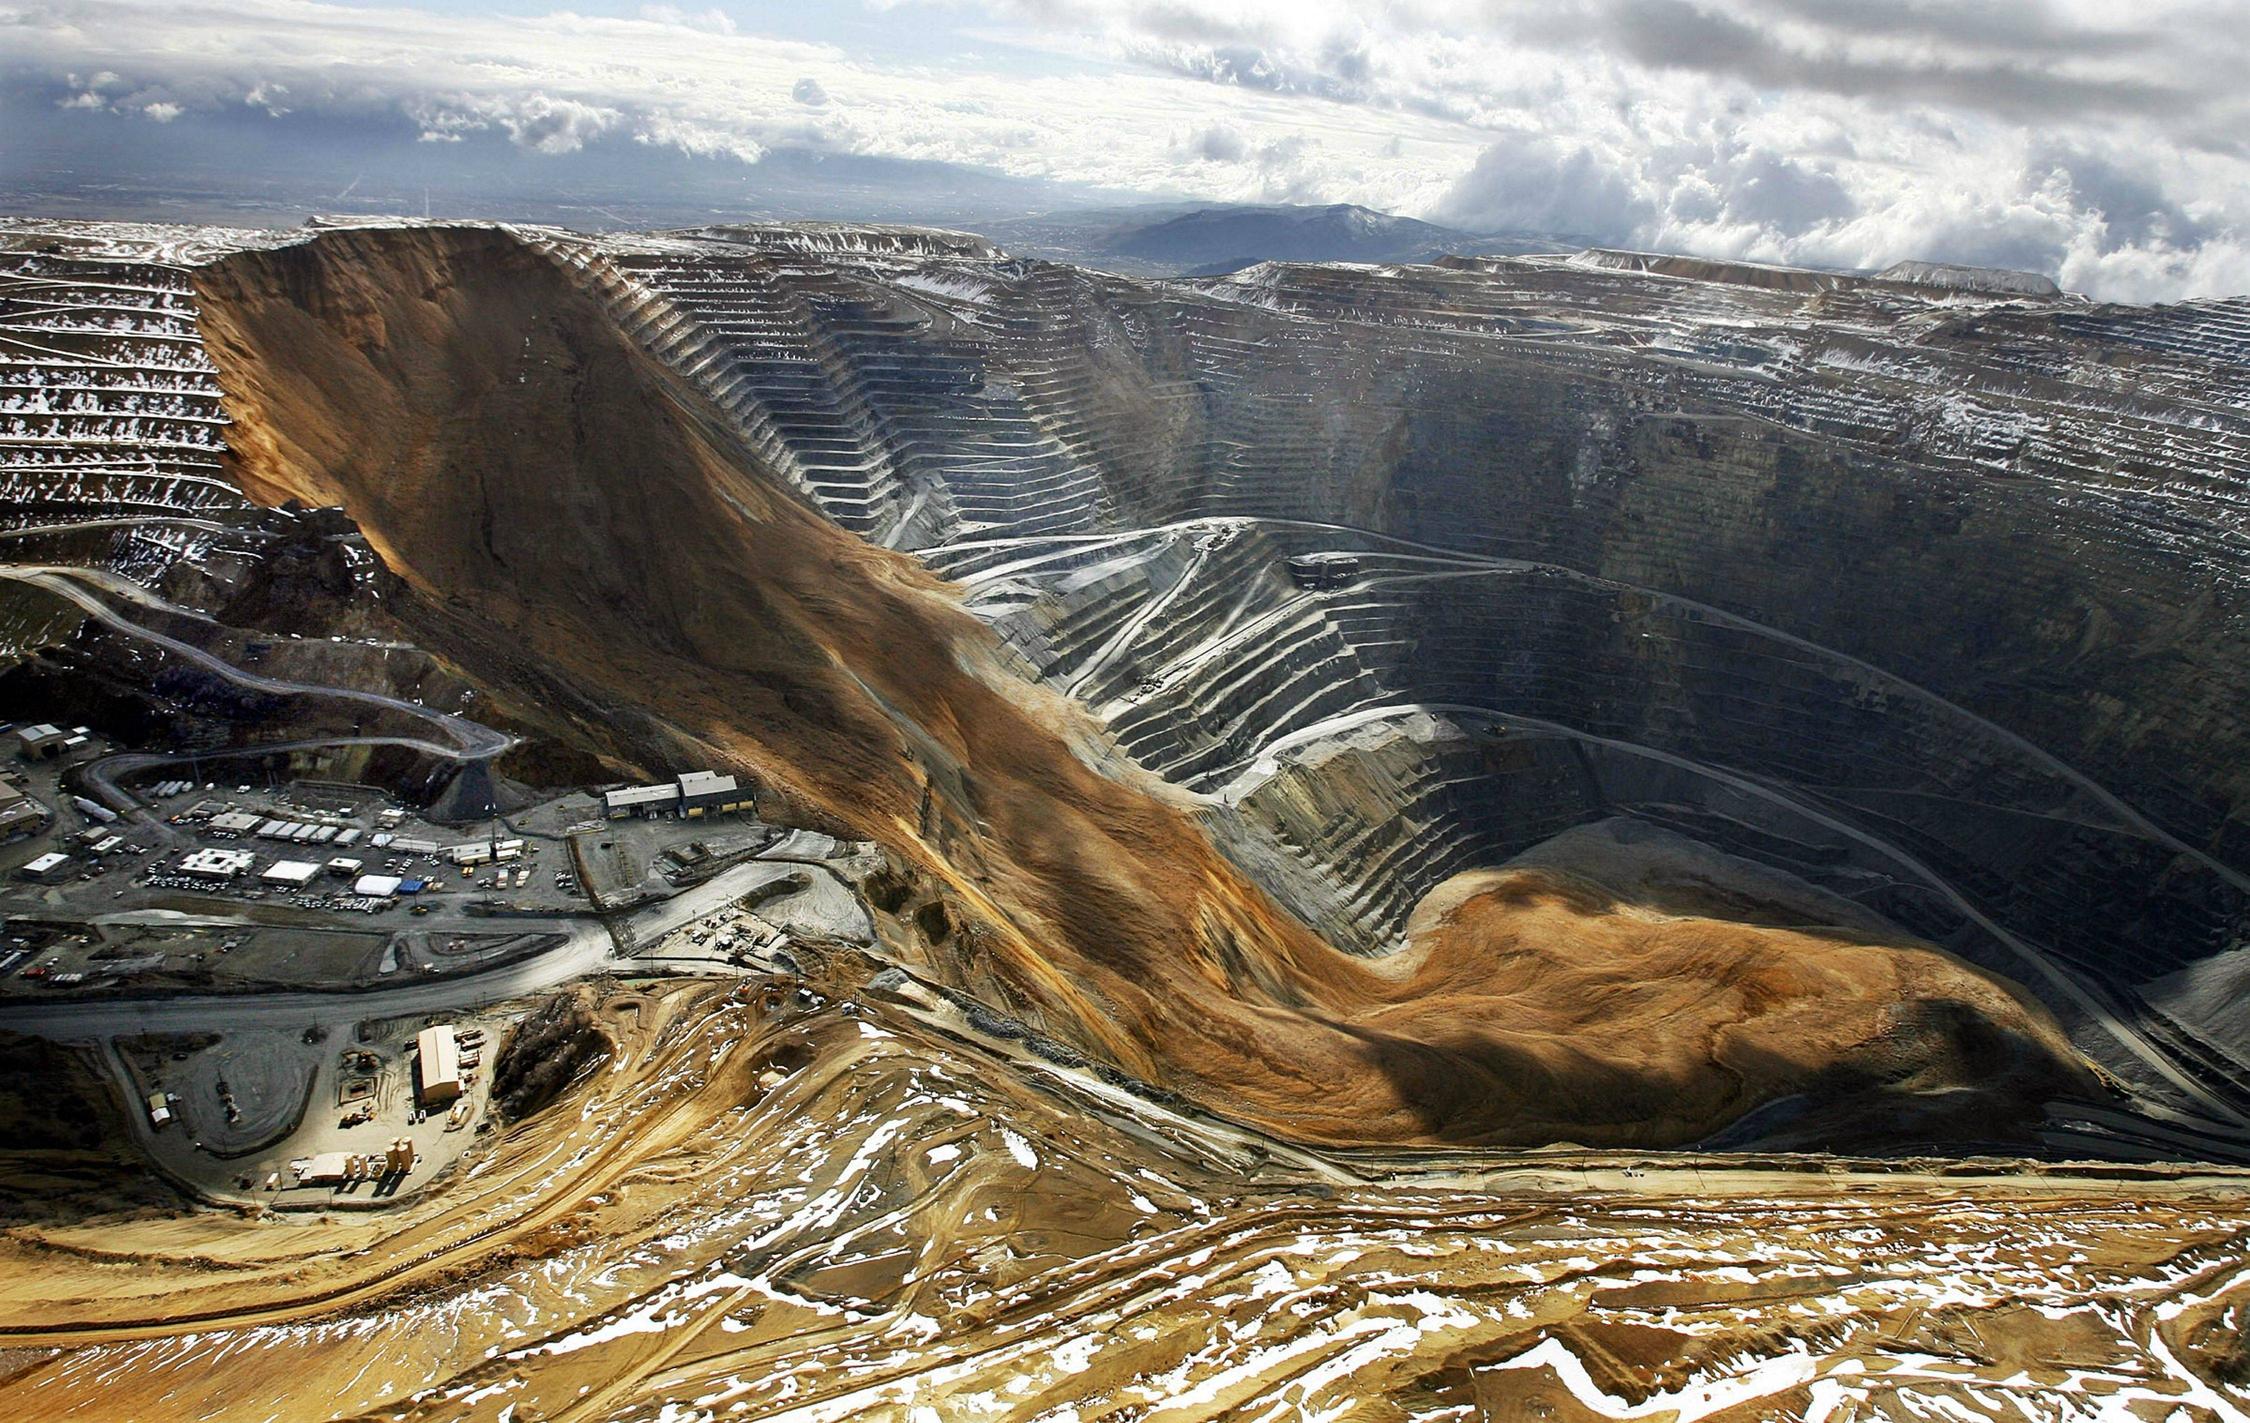 Landslide at a Silver Mine